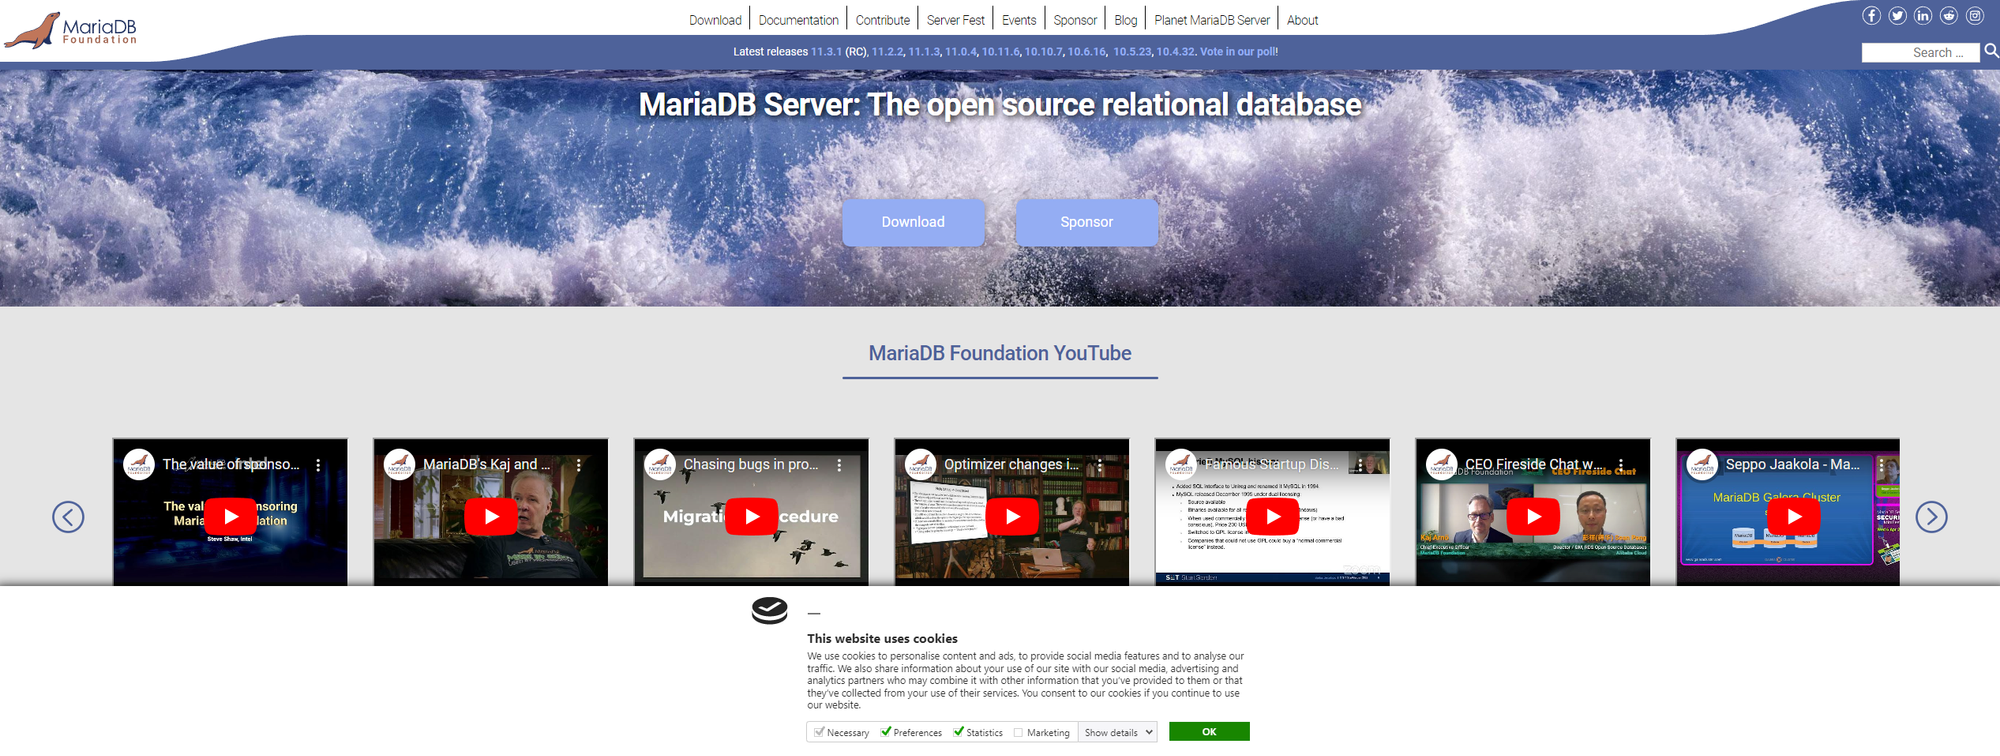 1 - 2. MariaDB Foundation - MariaDB.org 로 접속한 결과